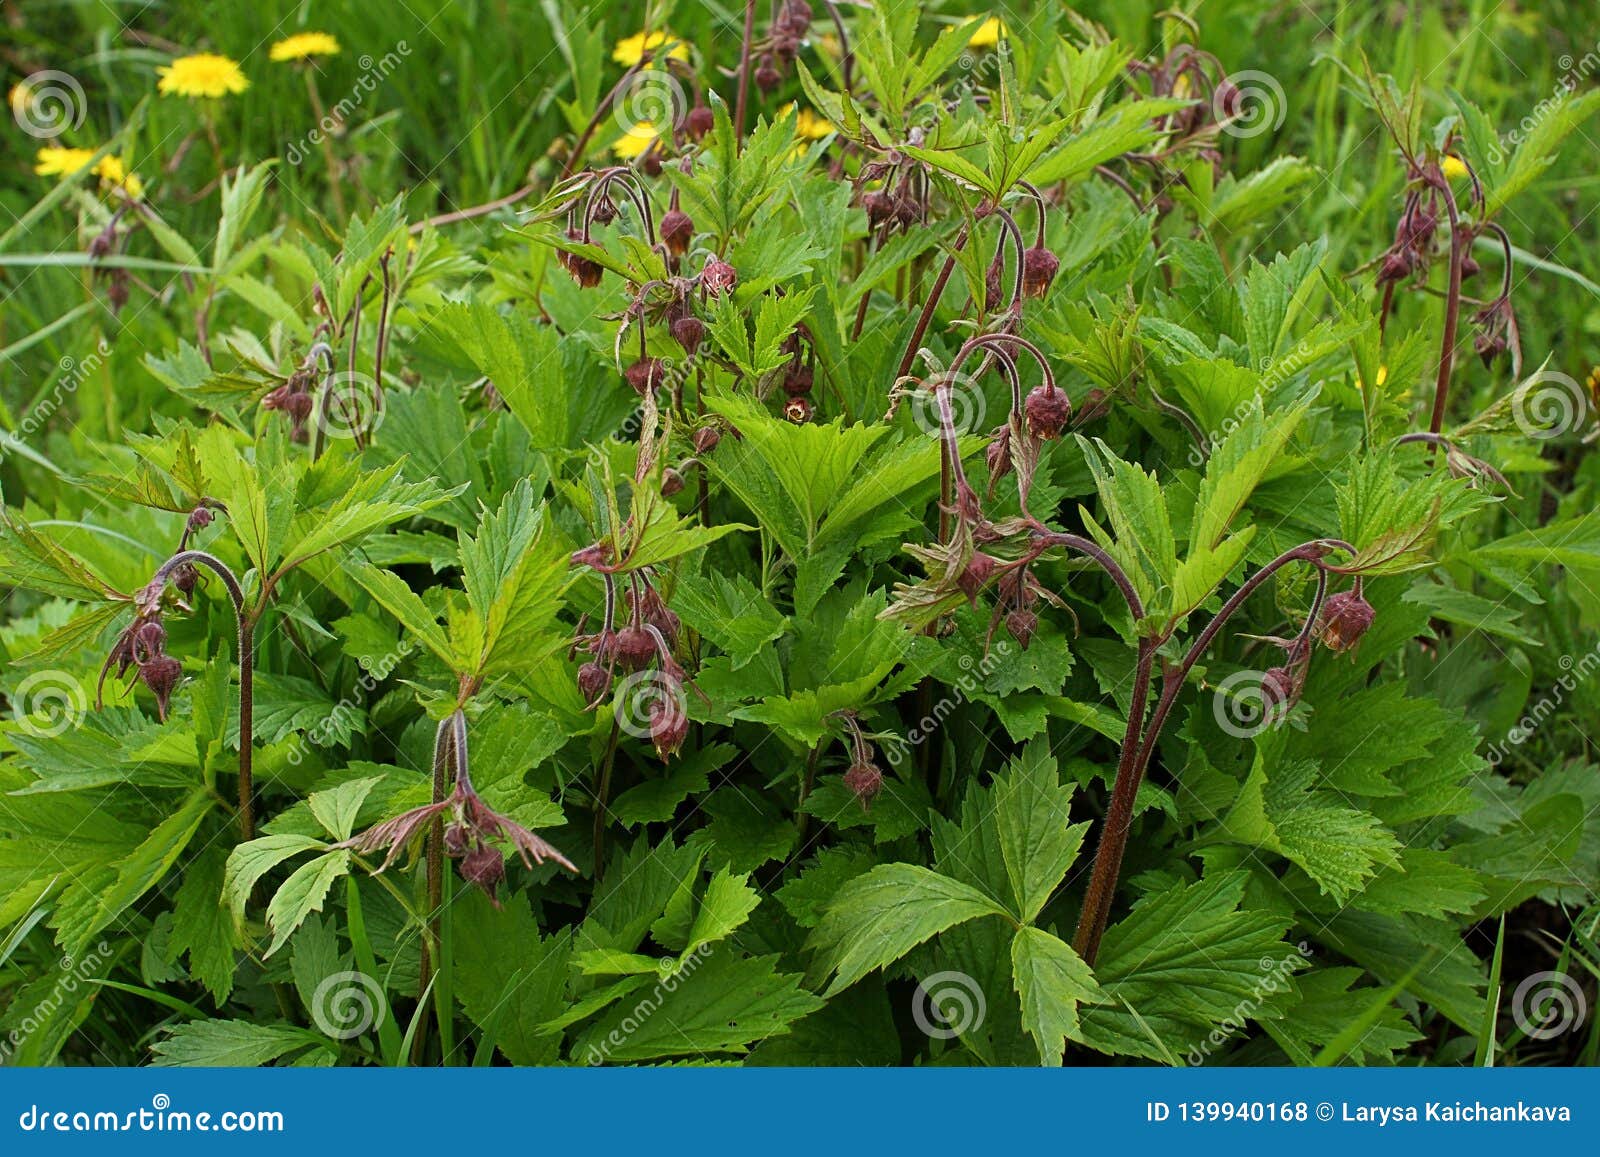 Geum Urbanum During Flowering Stock Photo Image Of Medicine Medical 139940168